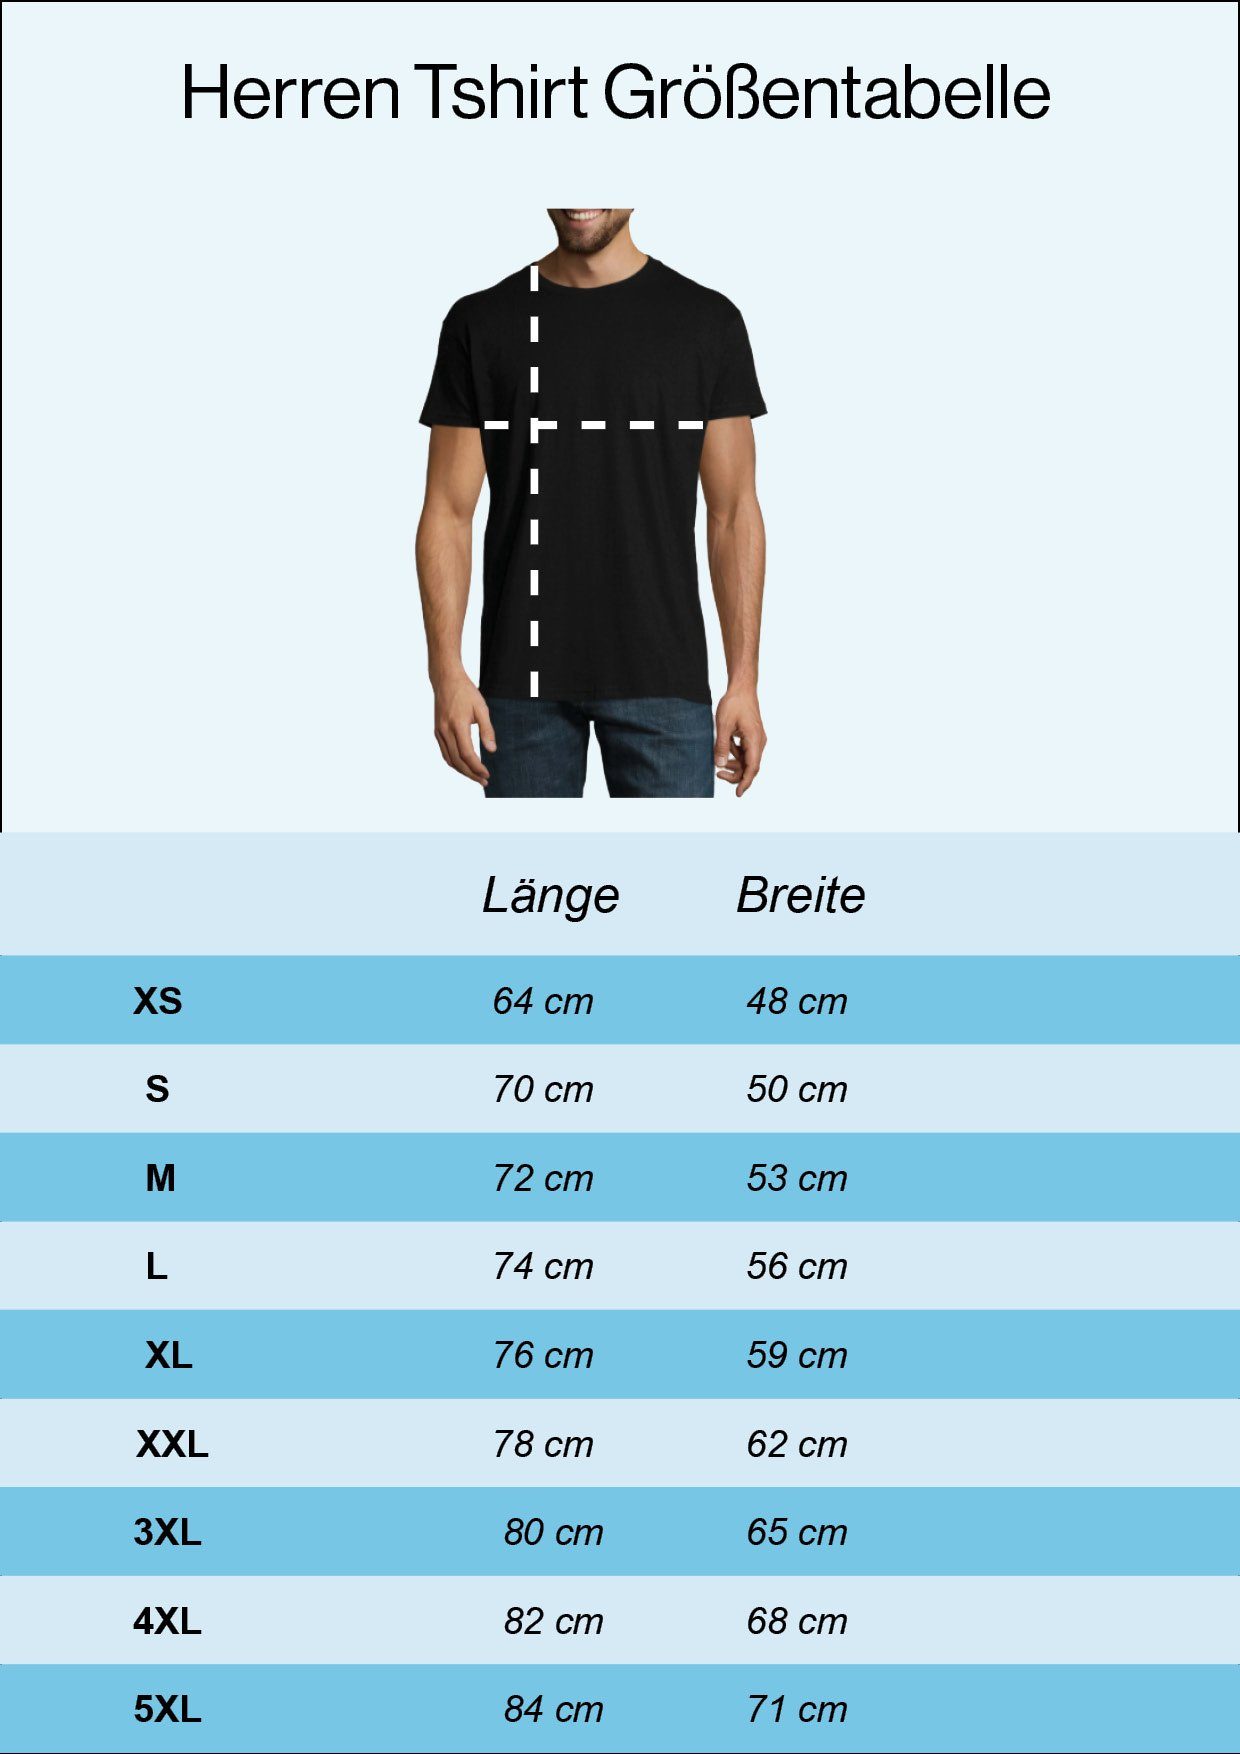 Herren Shirts Youth Designz T-Shirt R2D2 Herren T-Shirt mit modischem Frontprint